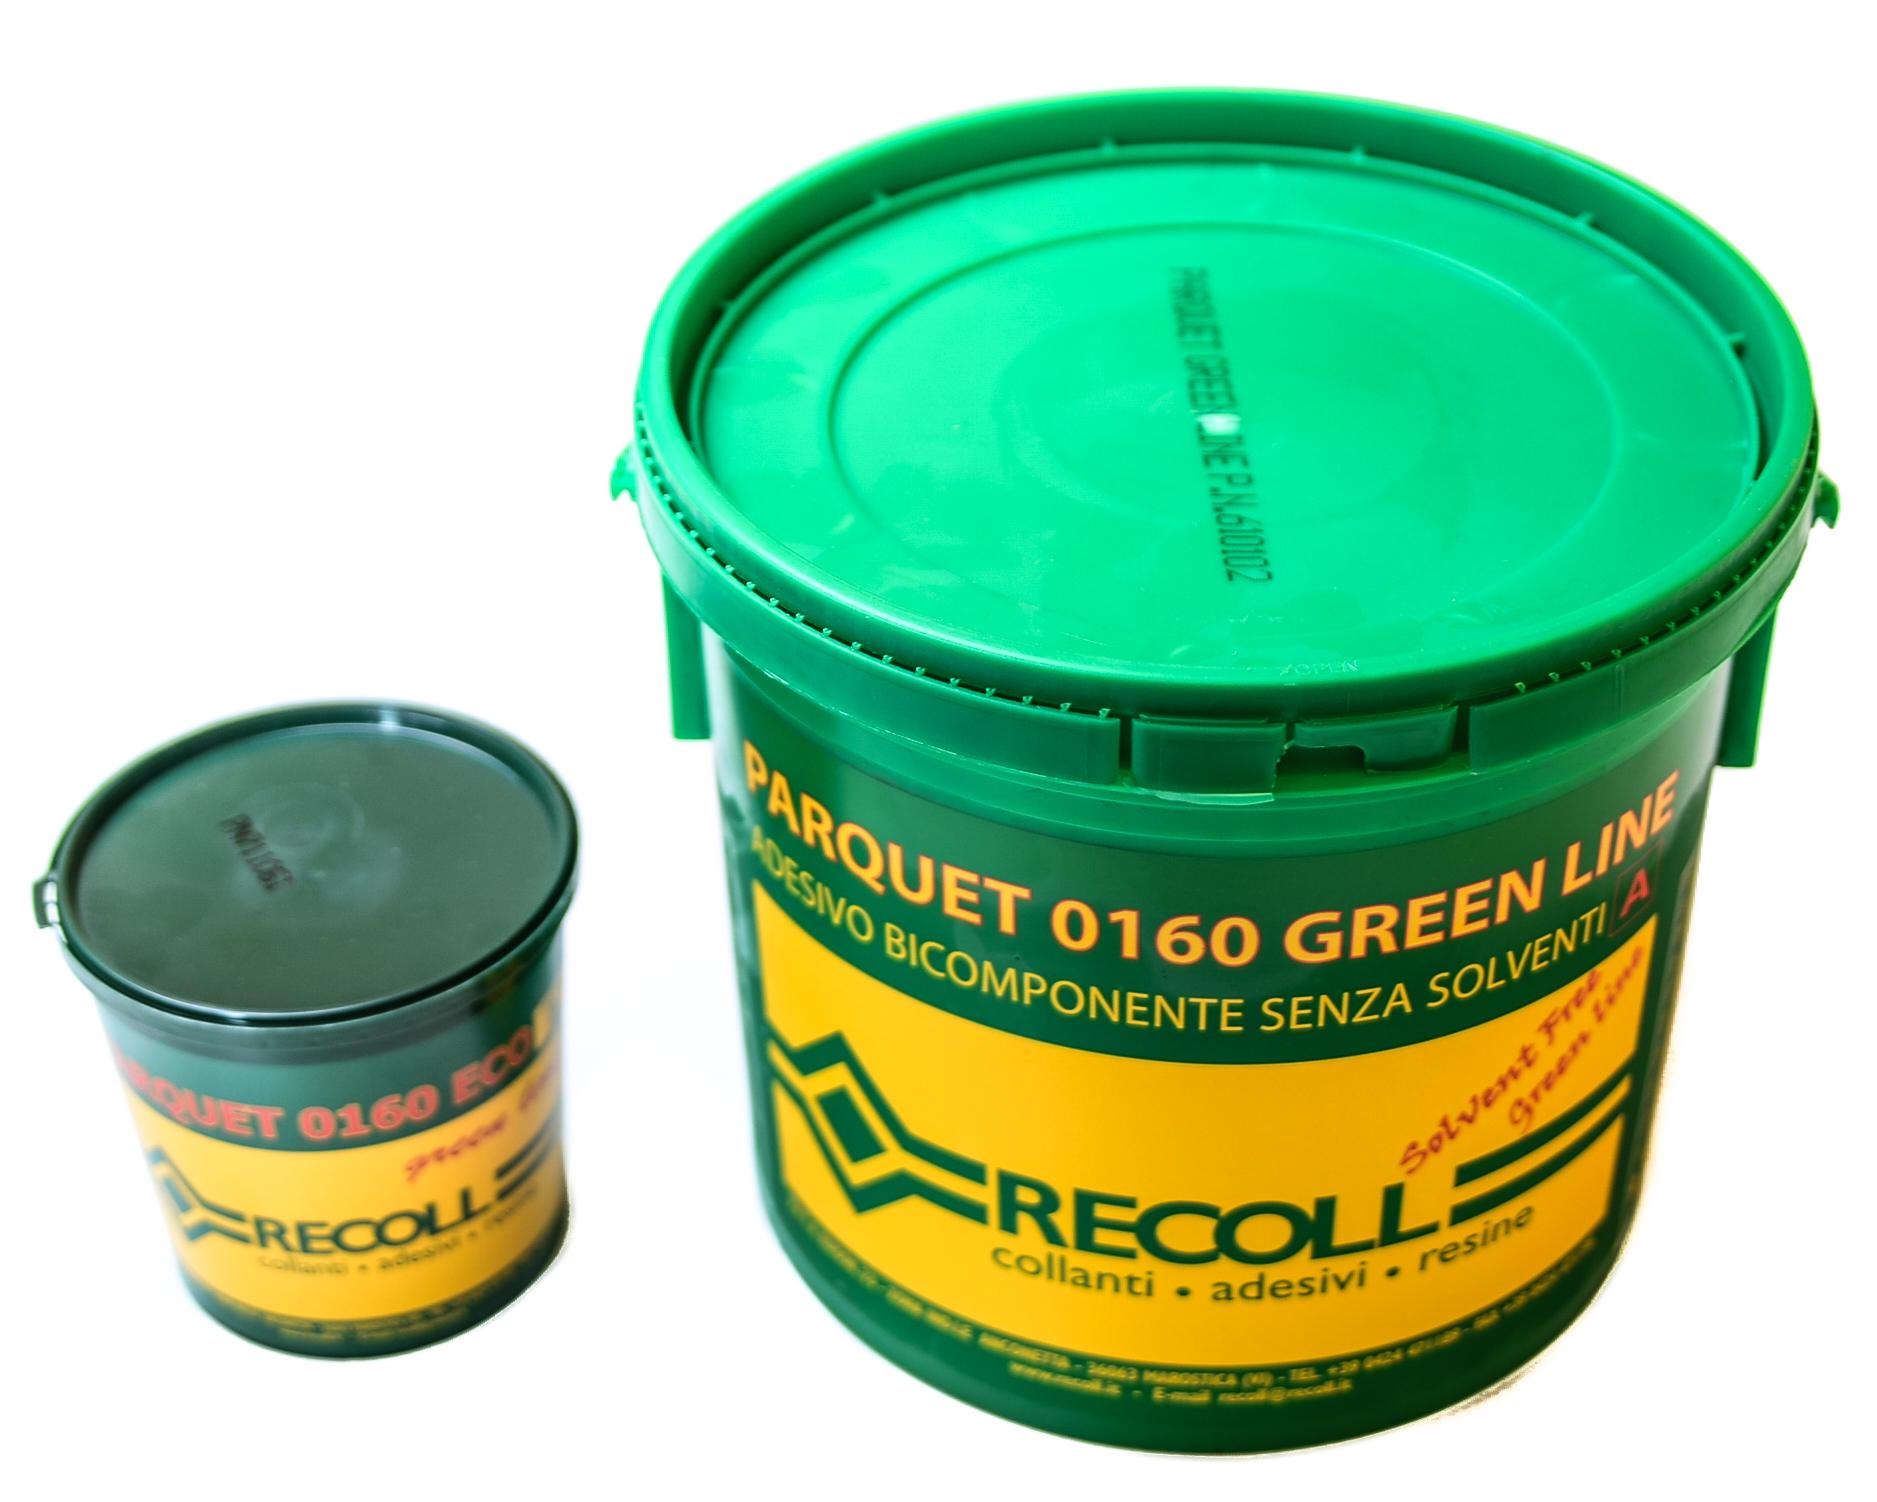 Клей для паркета Recoll 0160 Eco green line 2K (ch-21746/2)